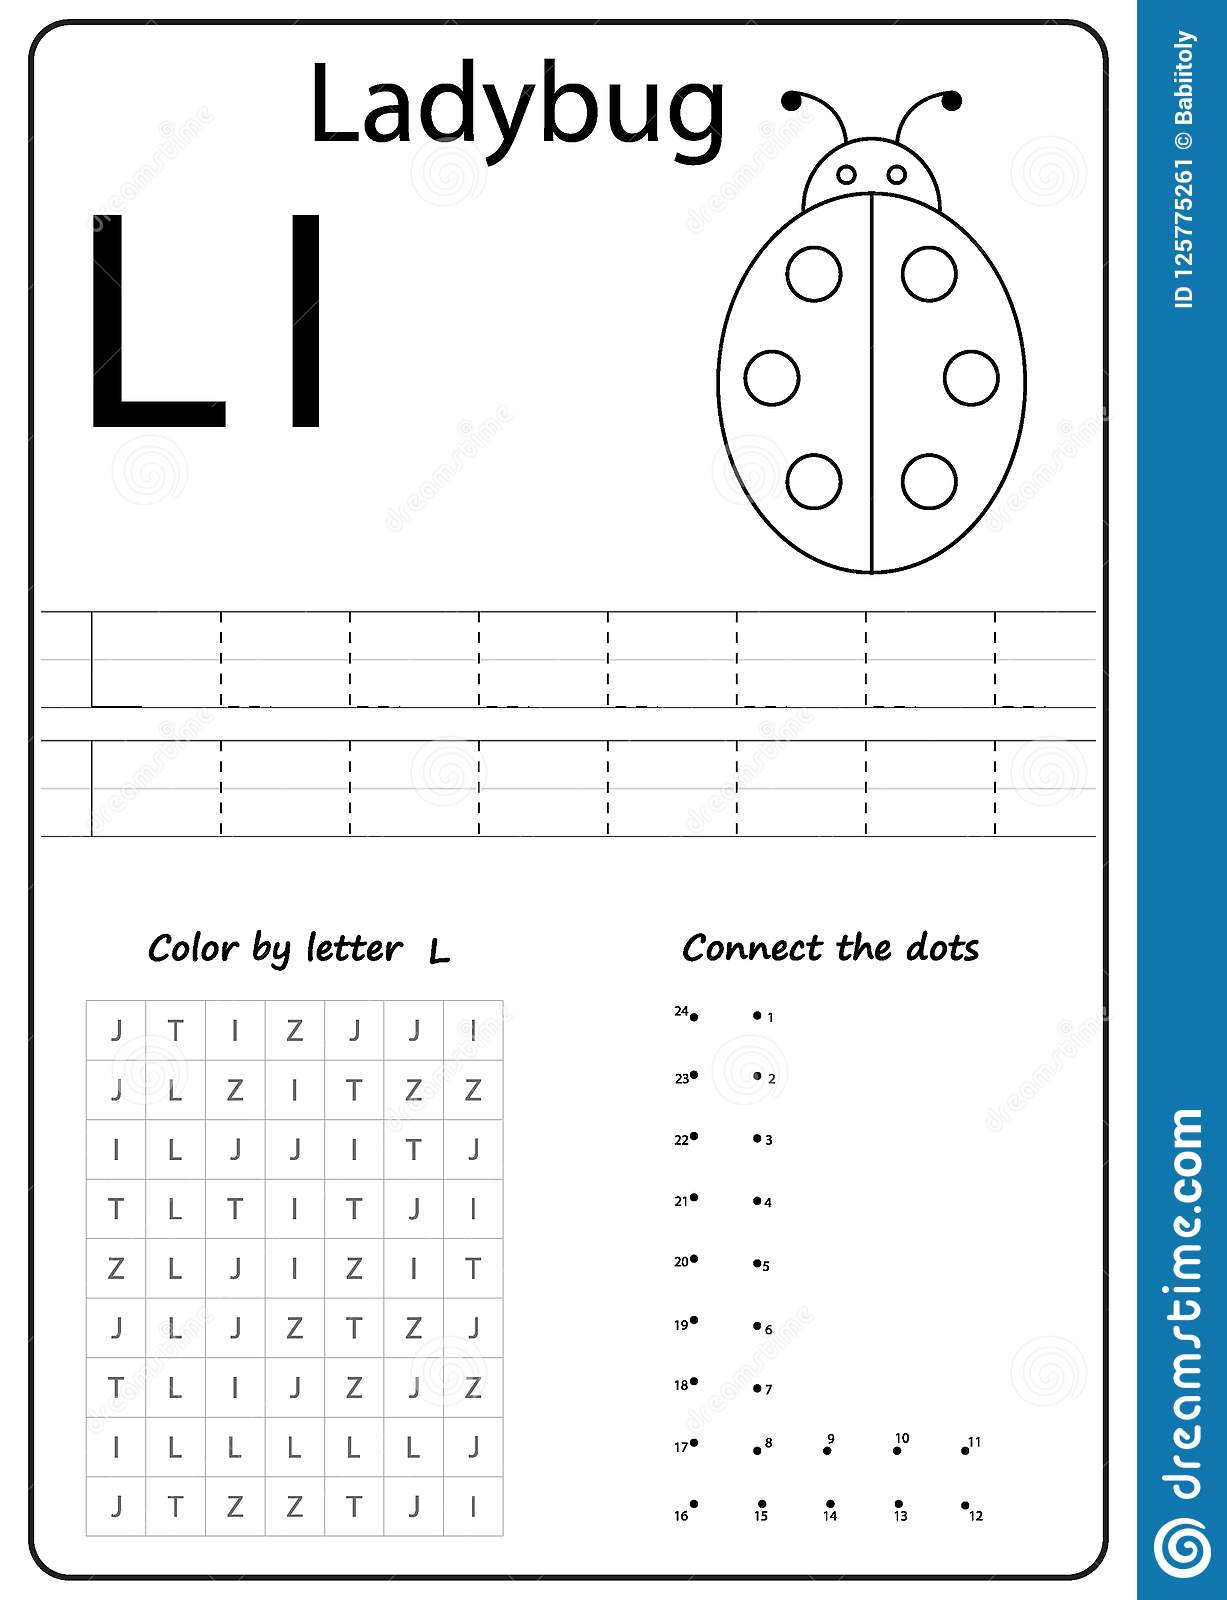 letter-ll-worksheets-for-kindergarten-printable-kindergarten-worksheets